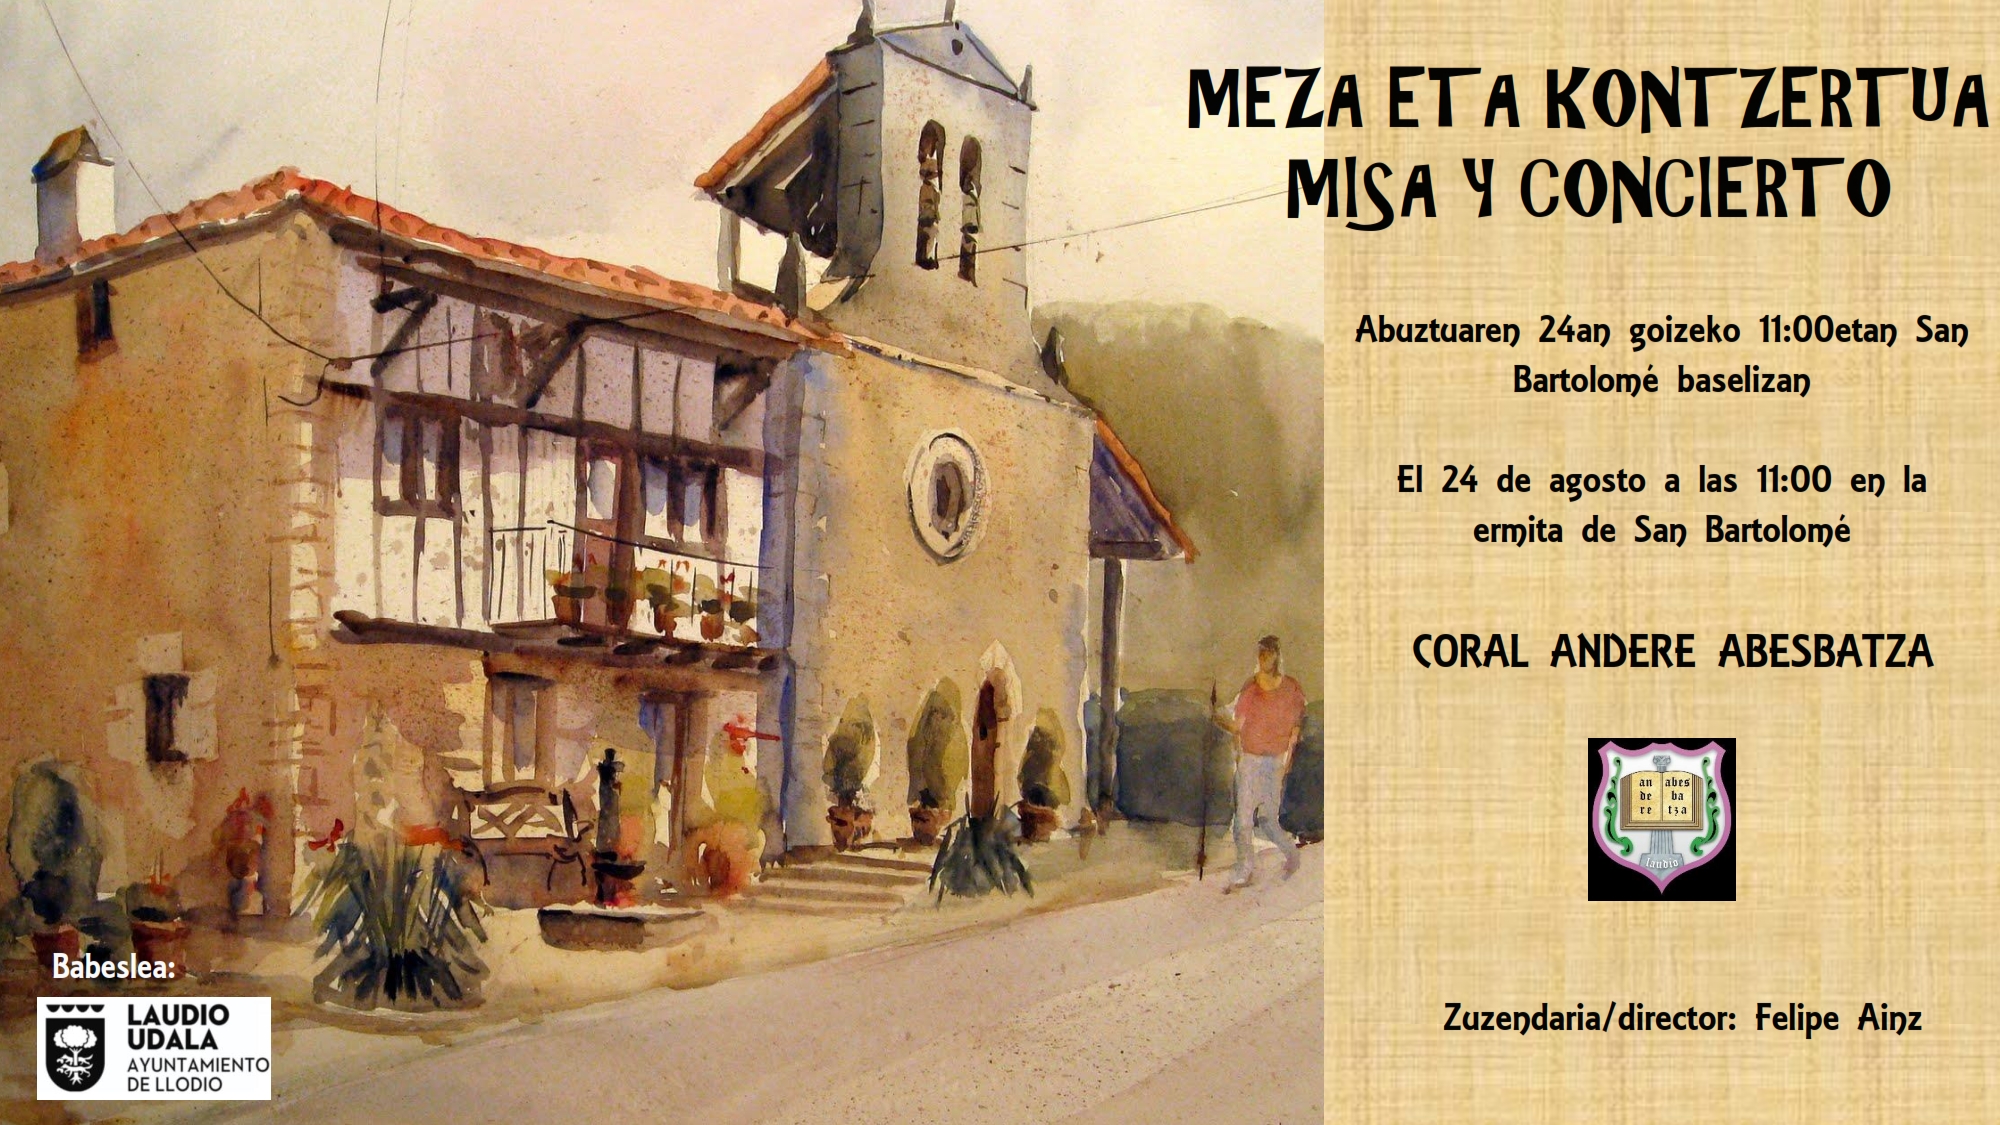 Coral Andere Abesbatza, concierto viernes 24  de agosto en la ermita de San Bartolome de Laudio.